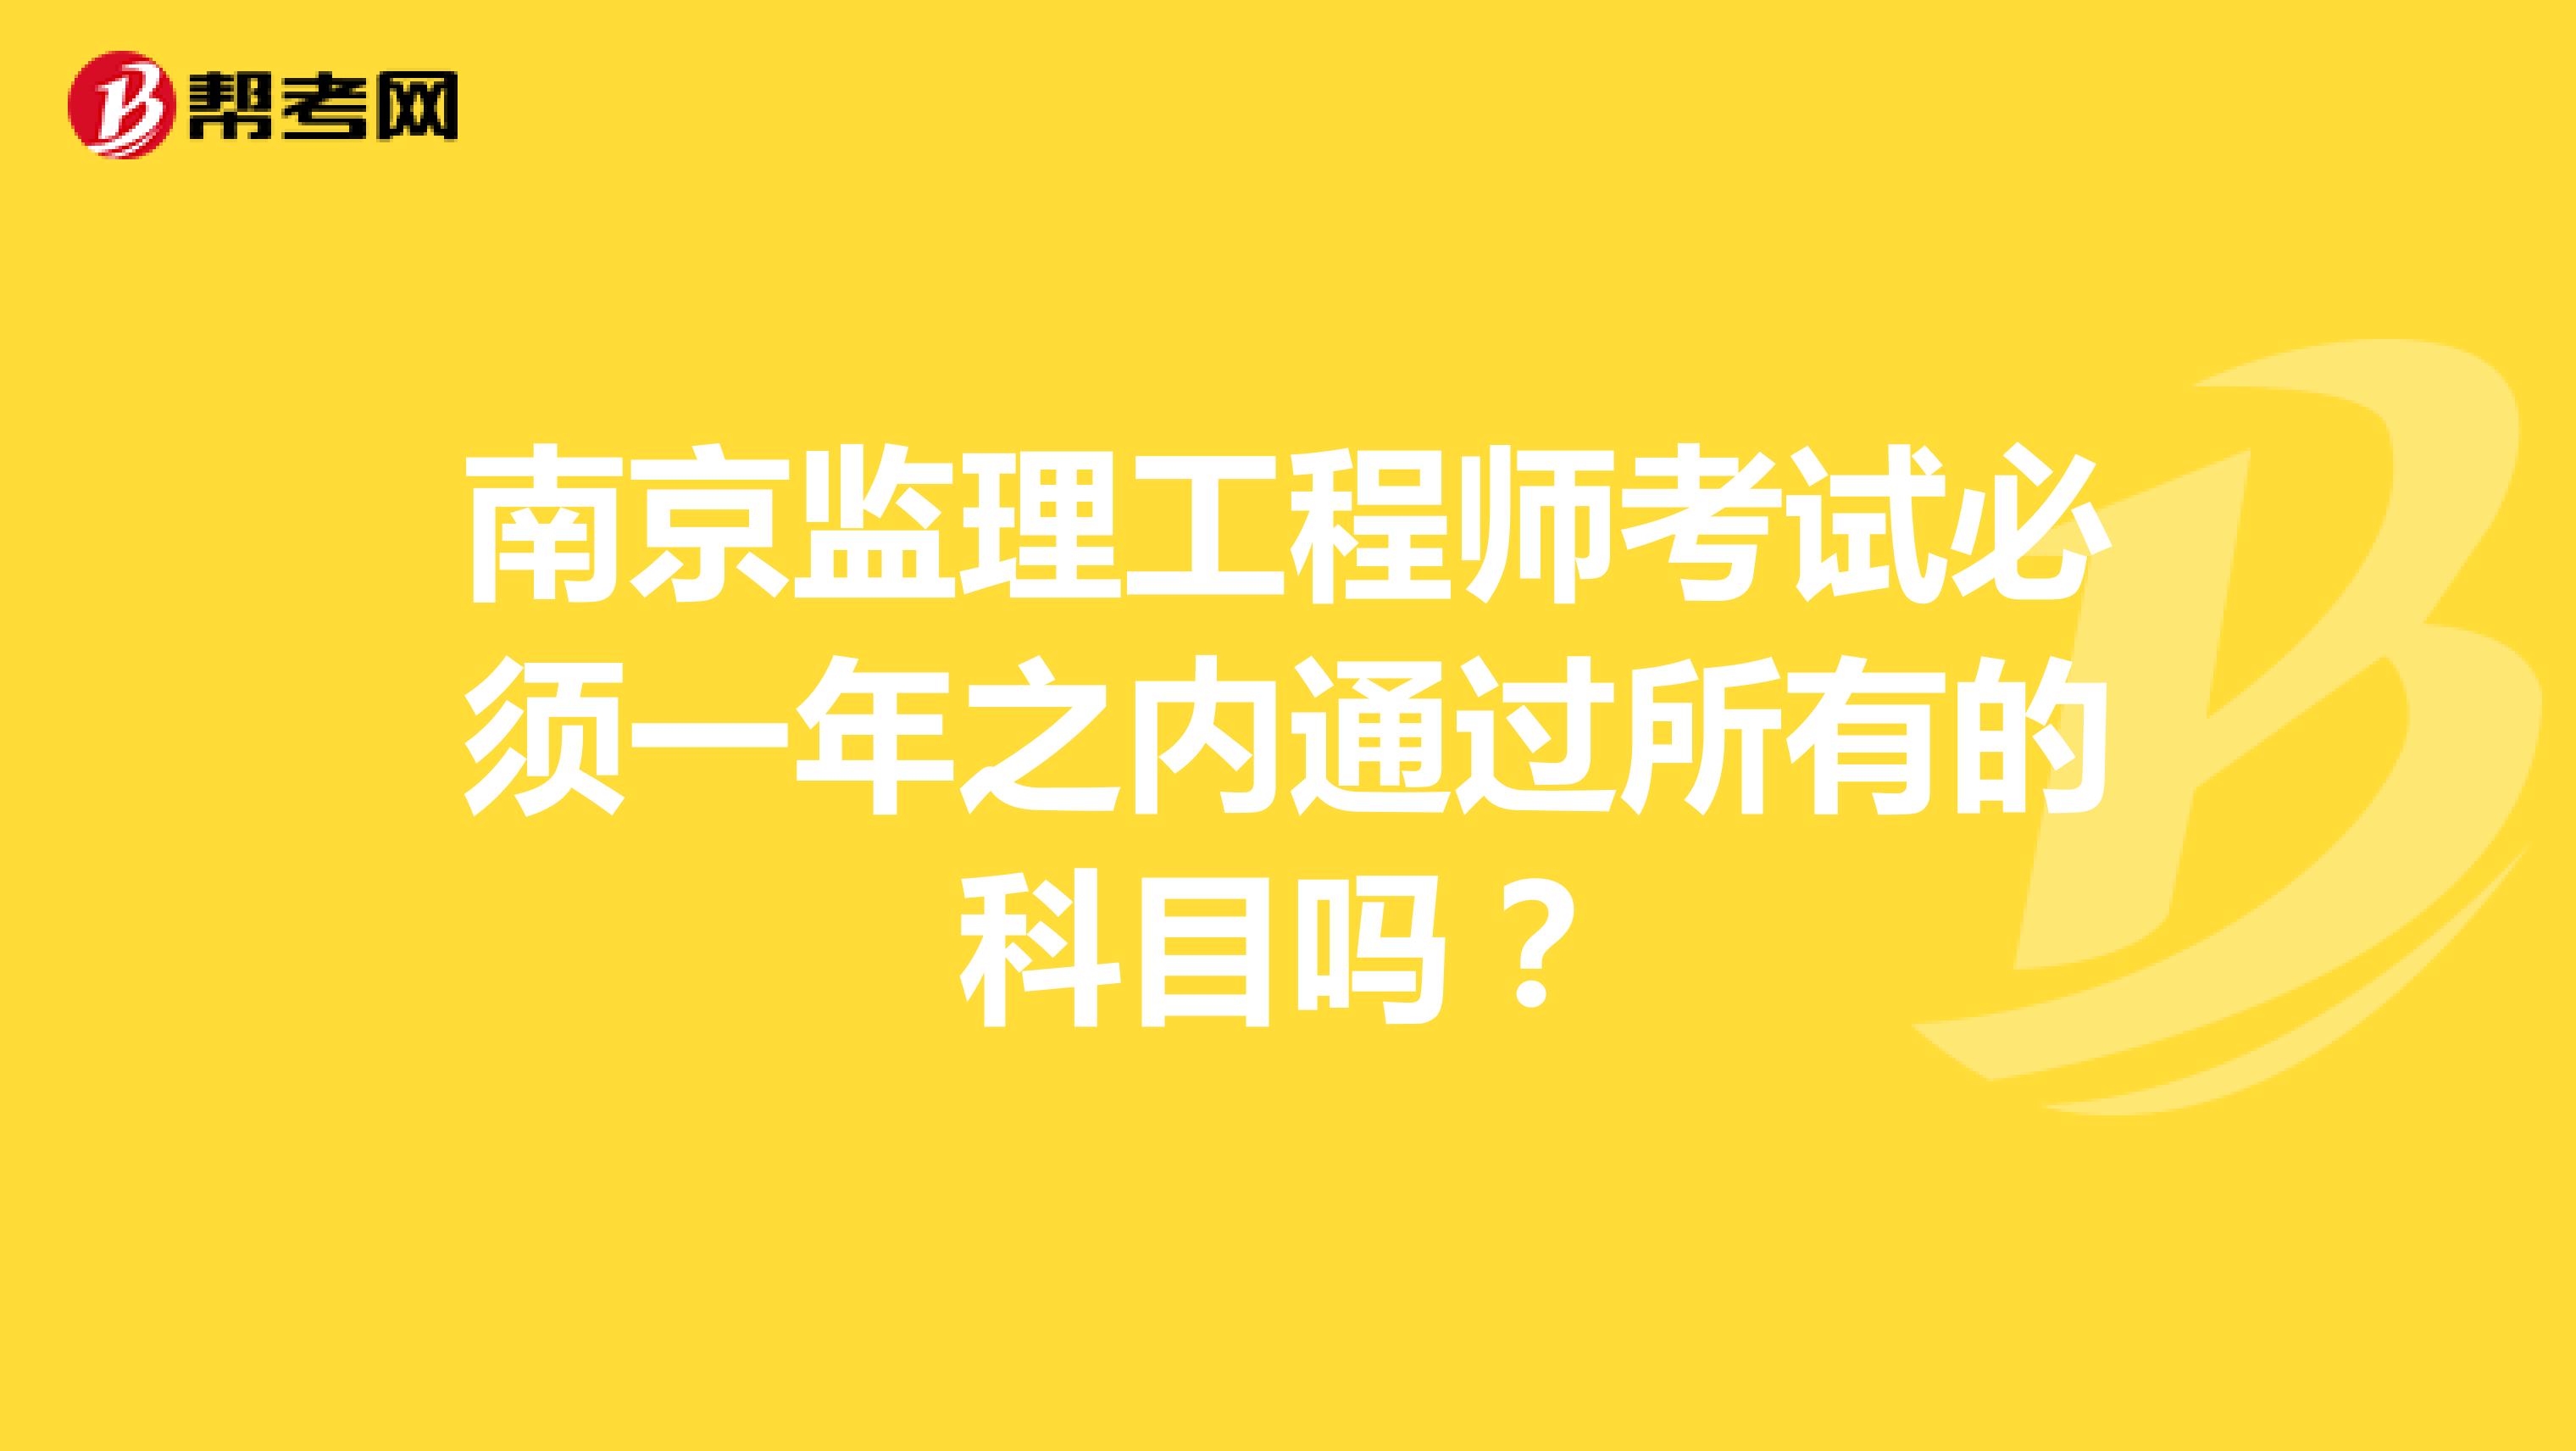 南京监理工程师考试必须一年之内通过所有的科目吗？